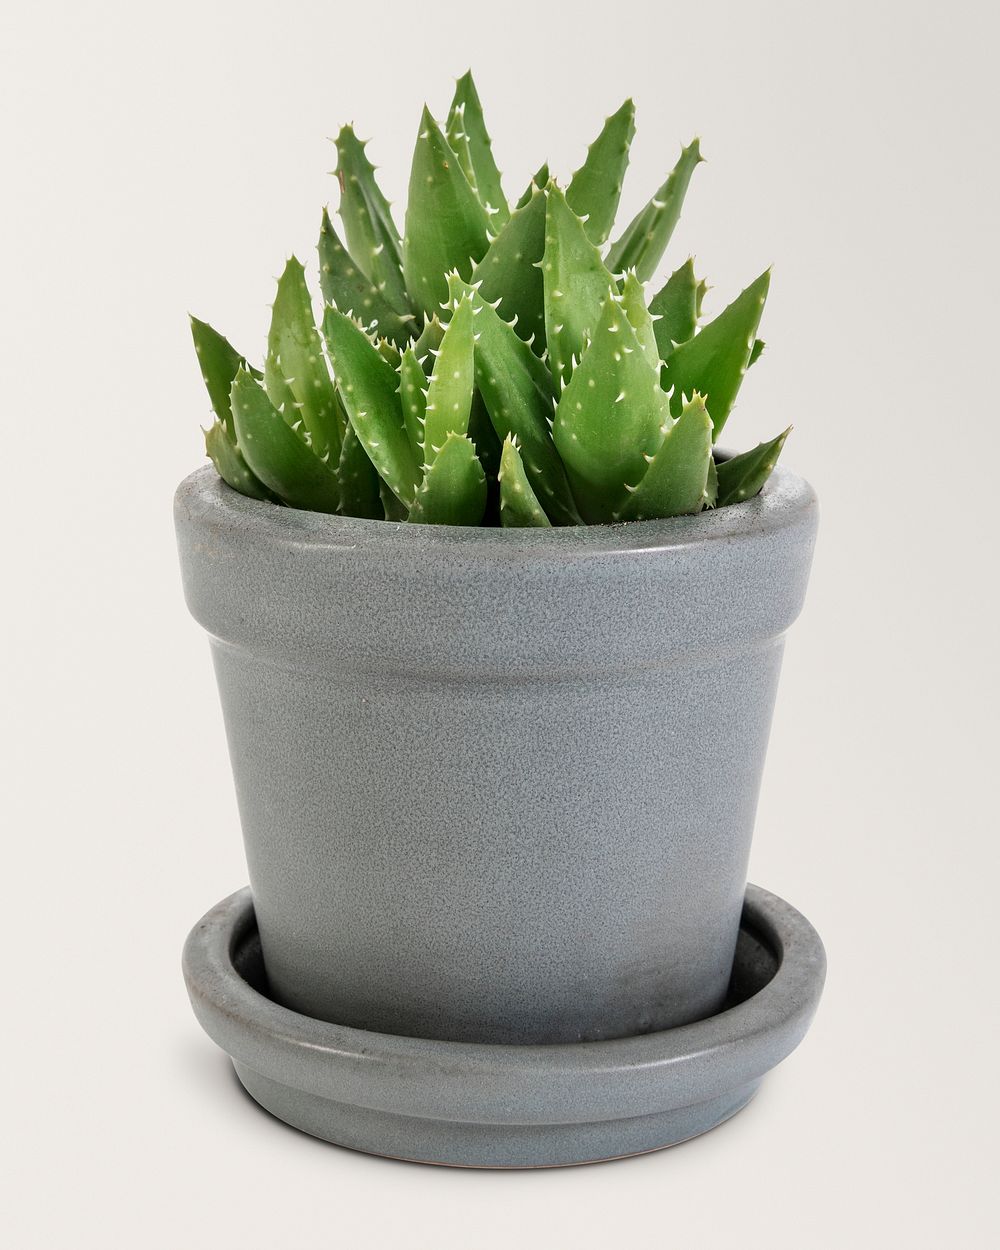 Aloe mockup psd in a ceramic pot